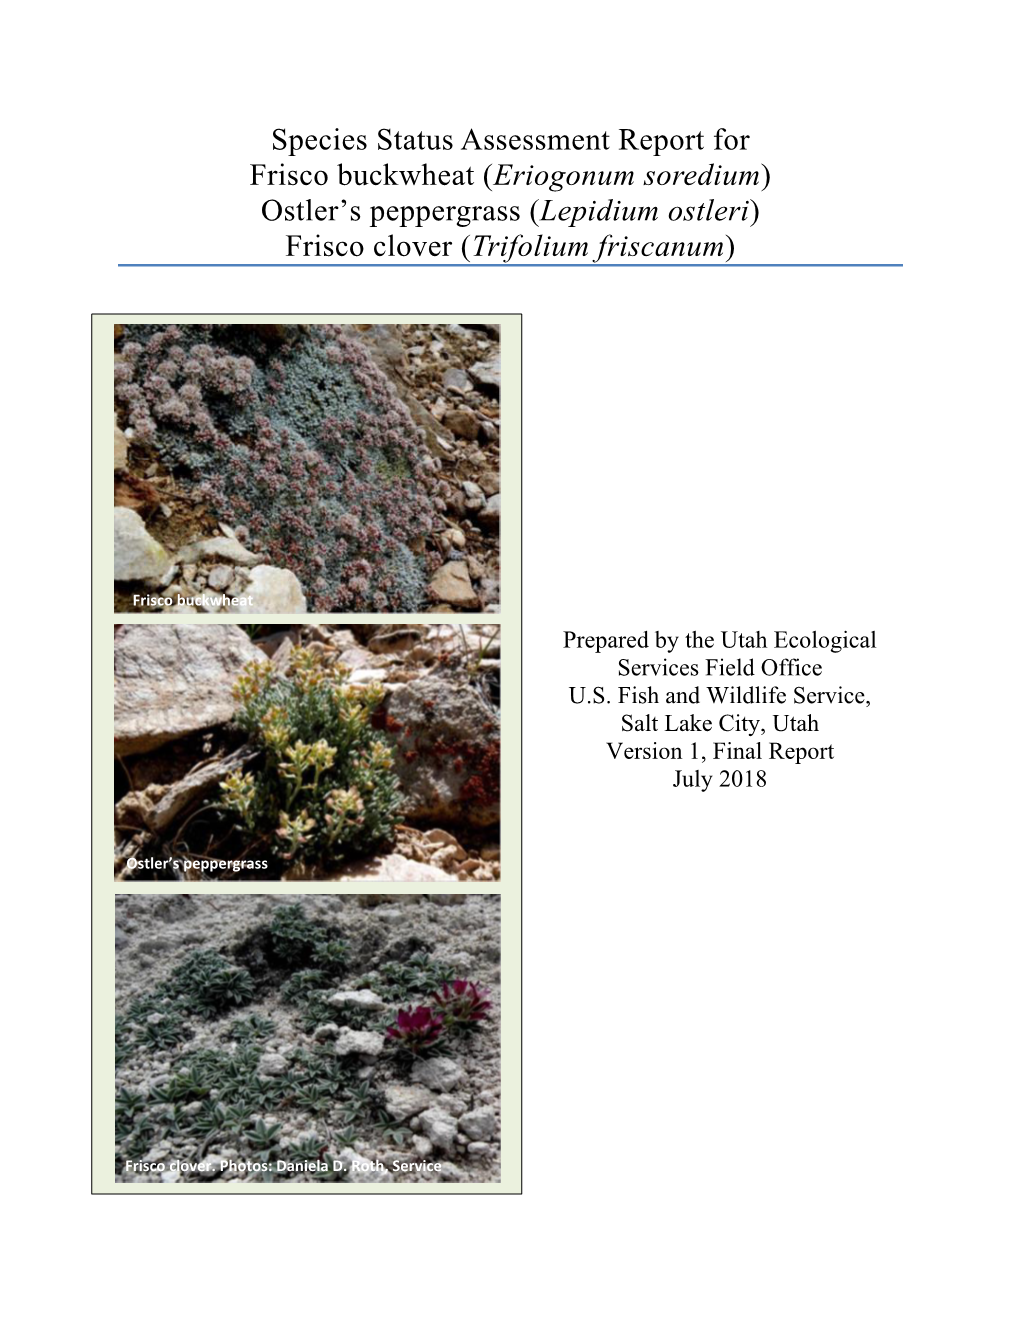 Species Status Assessment Report for Frisco Buckwheat (Eriogonum Soredium) Ostler’S Peppergrass (Lepidium Ostleri) Frisco Clover (Trifolium Friscanum)